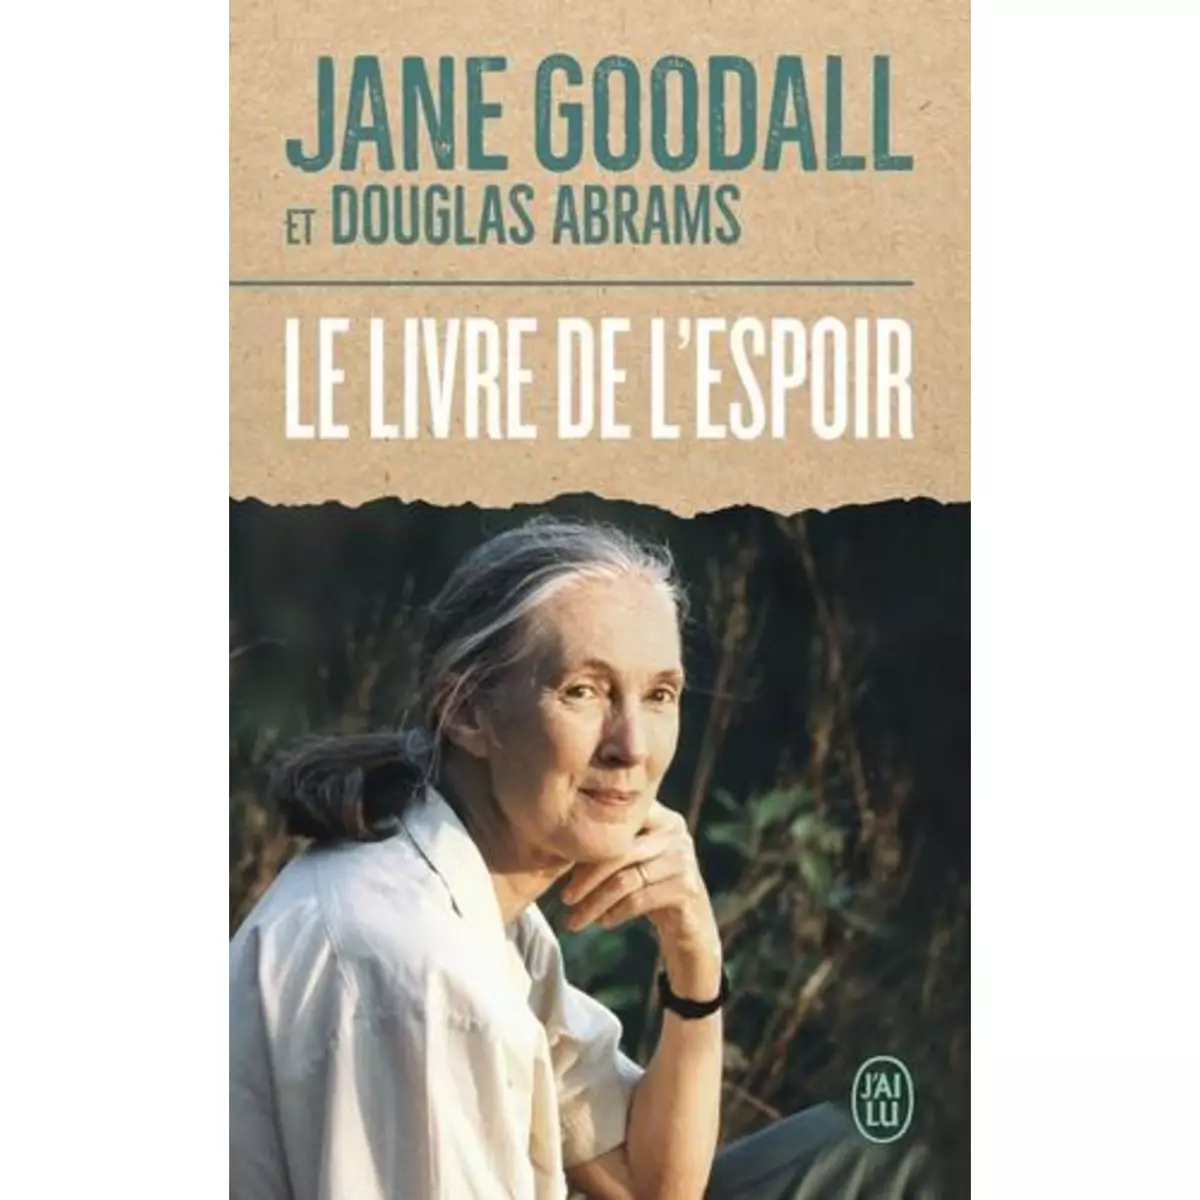  LE LIVRE DE L'ESPOIR, Goodall Jane